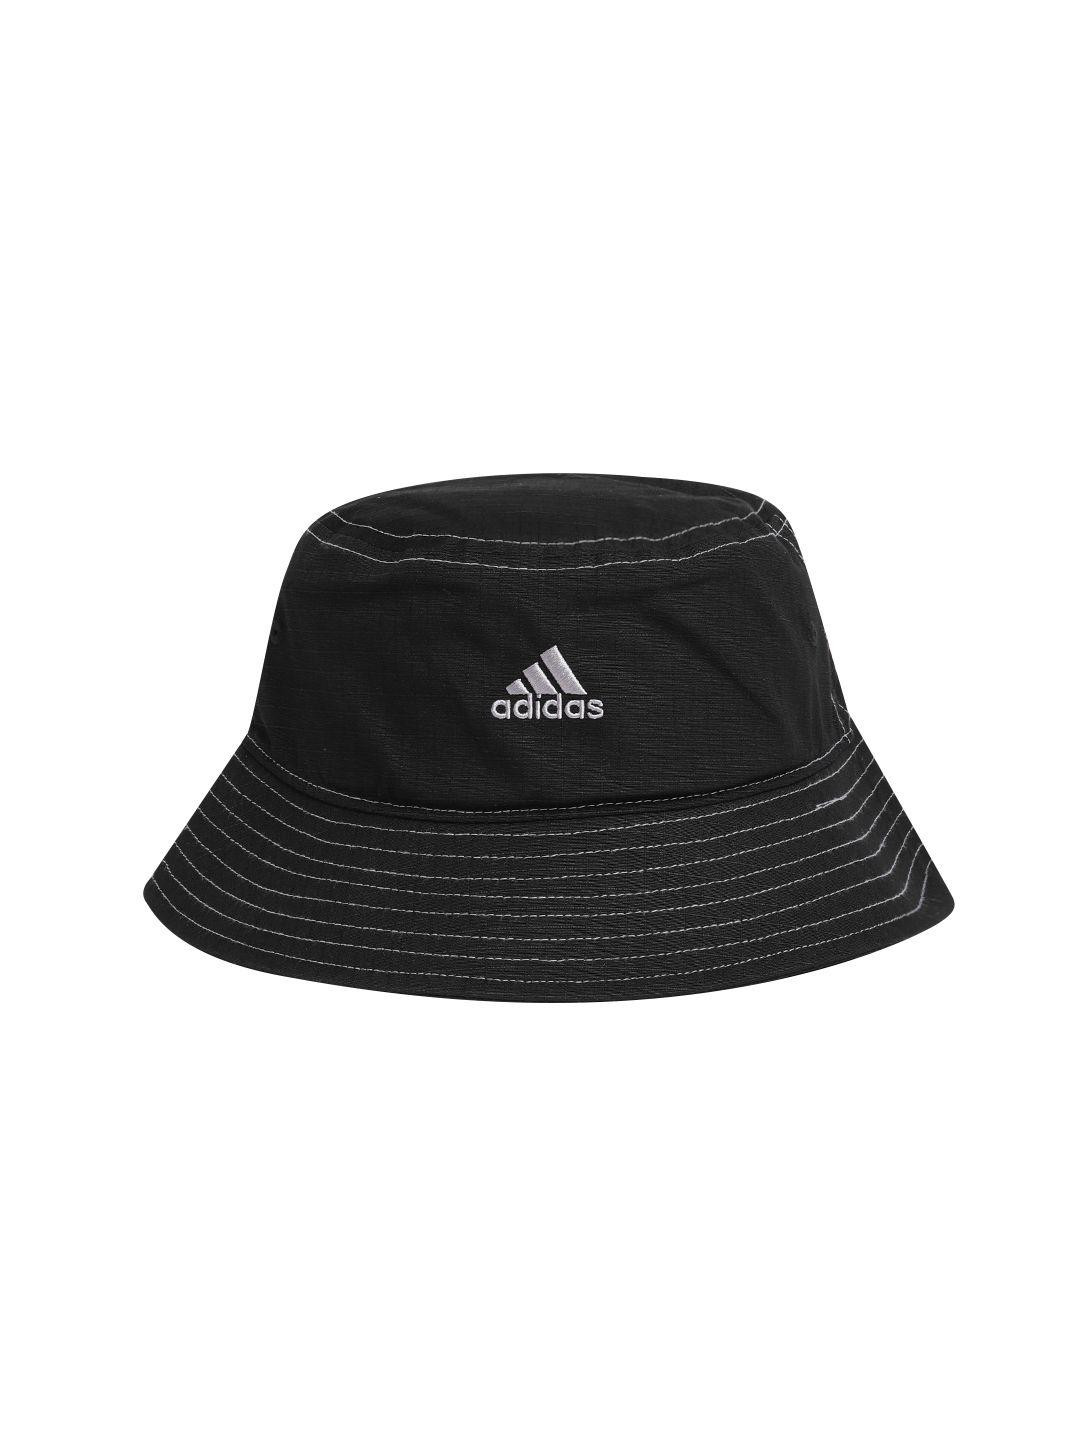 adidas-unisex-cotton-brand-logo-detail-spw-clas-bucket-hat